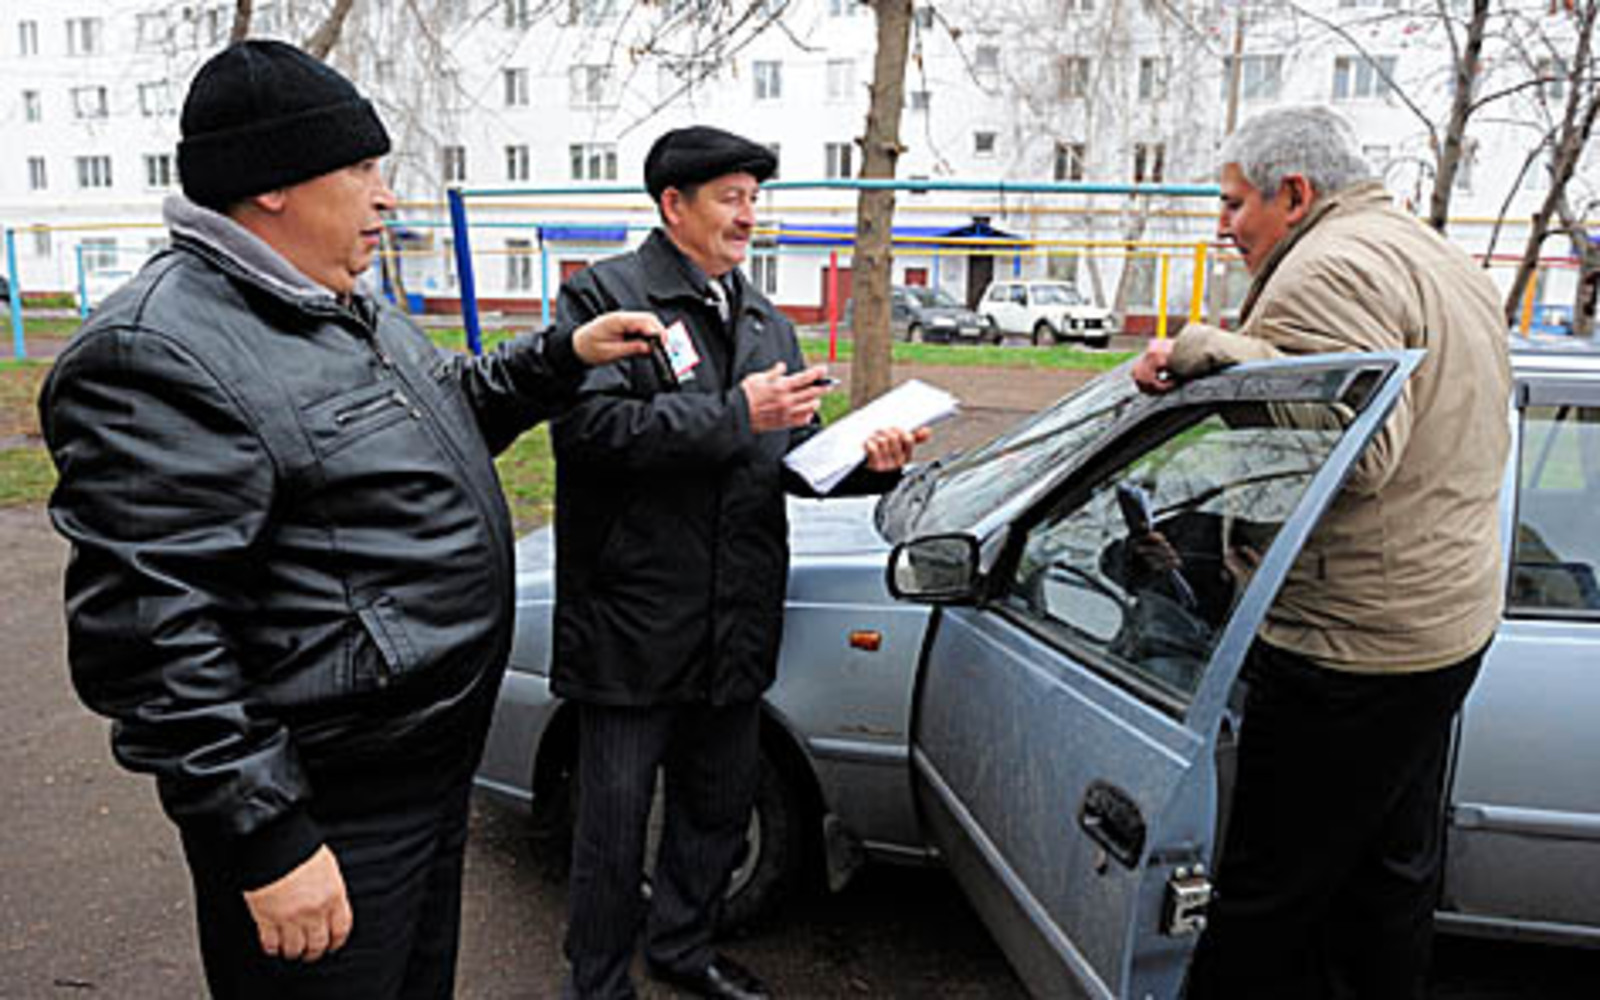 Паркуйтесь правильно, советуют сотрудники Демского отделения Центра общественной безопасности Мурат Хайретдинов и Рафик Насыров.